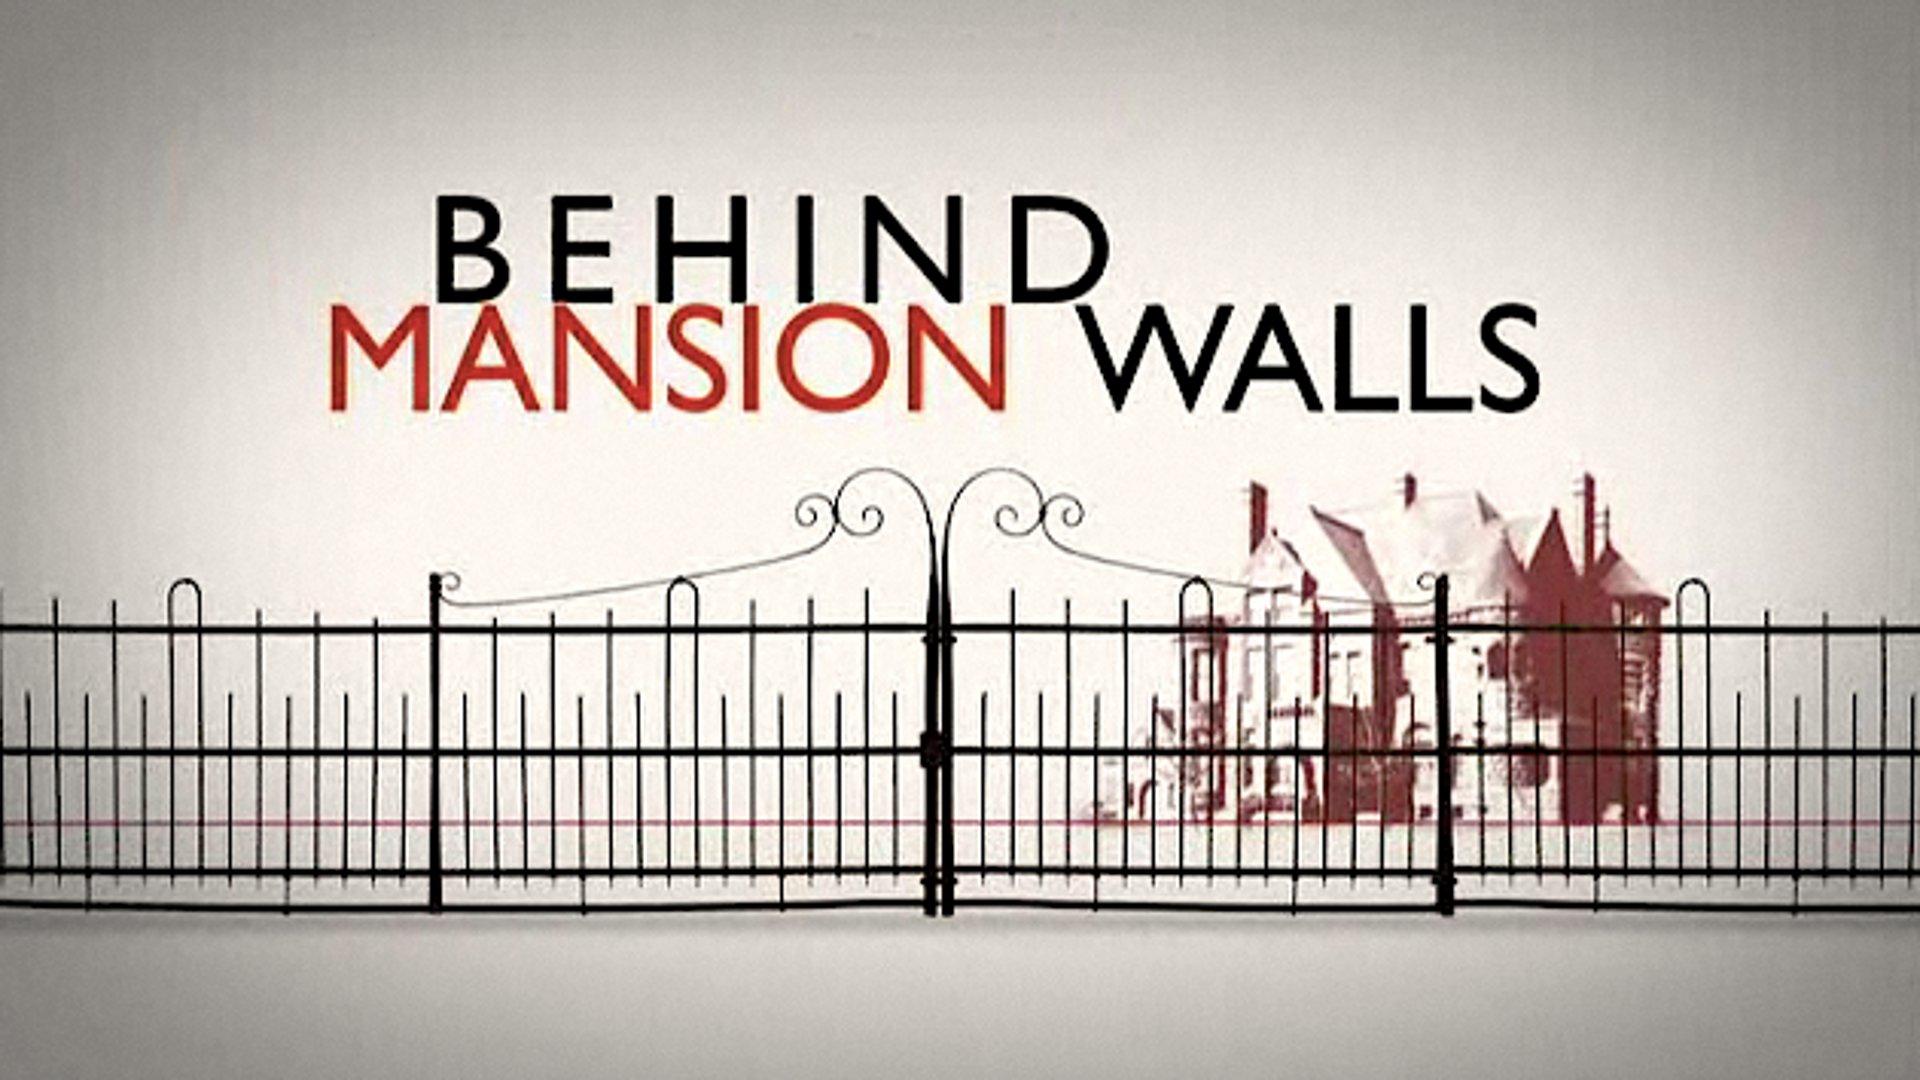 Behind Mansion Walls